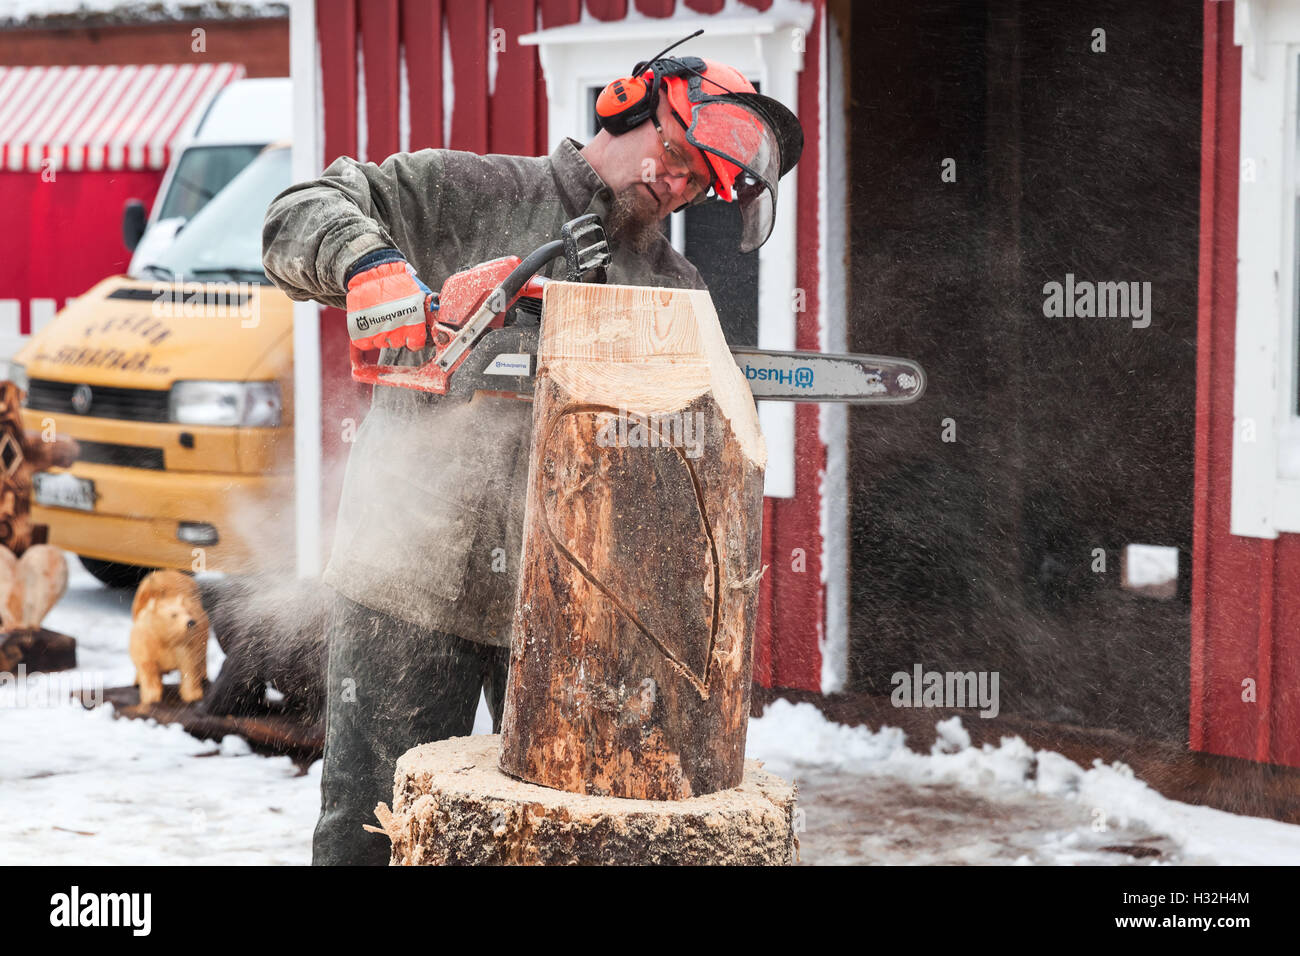 Hamina, Finlandia - 13 de diciembre de 2014: Maestro escultor con una motosierra produce pájaro de madera escultura Foto de stock